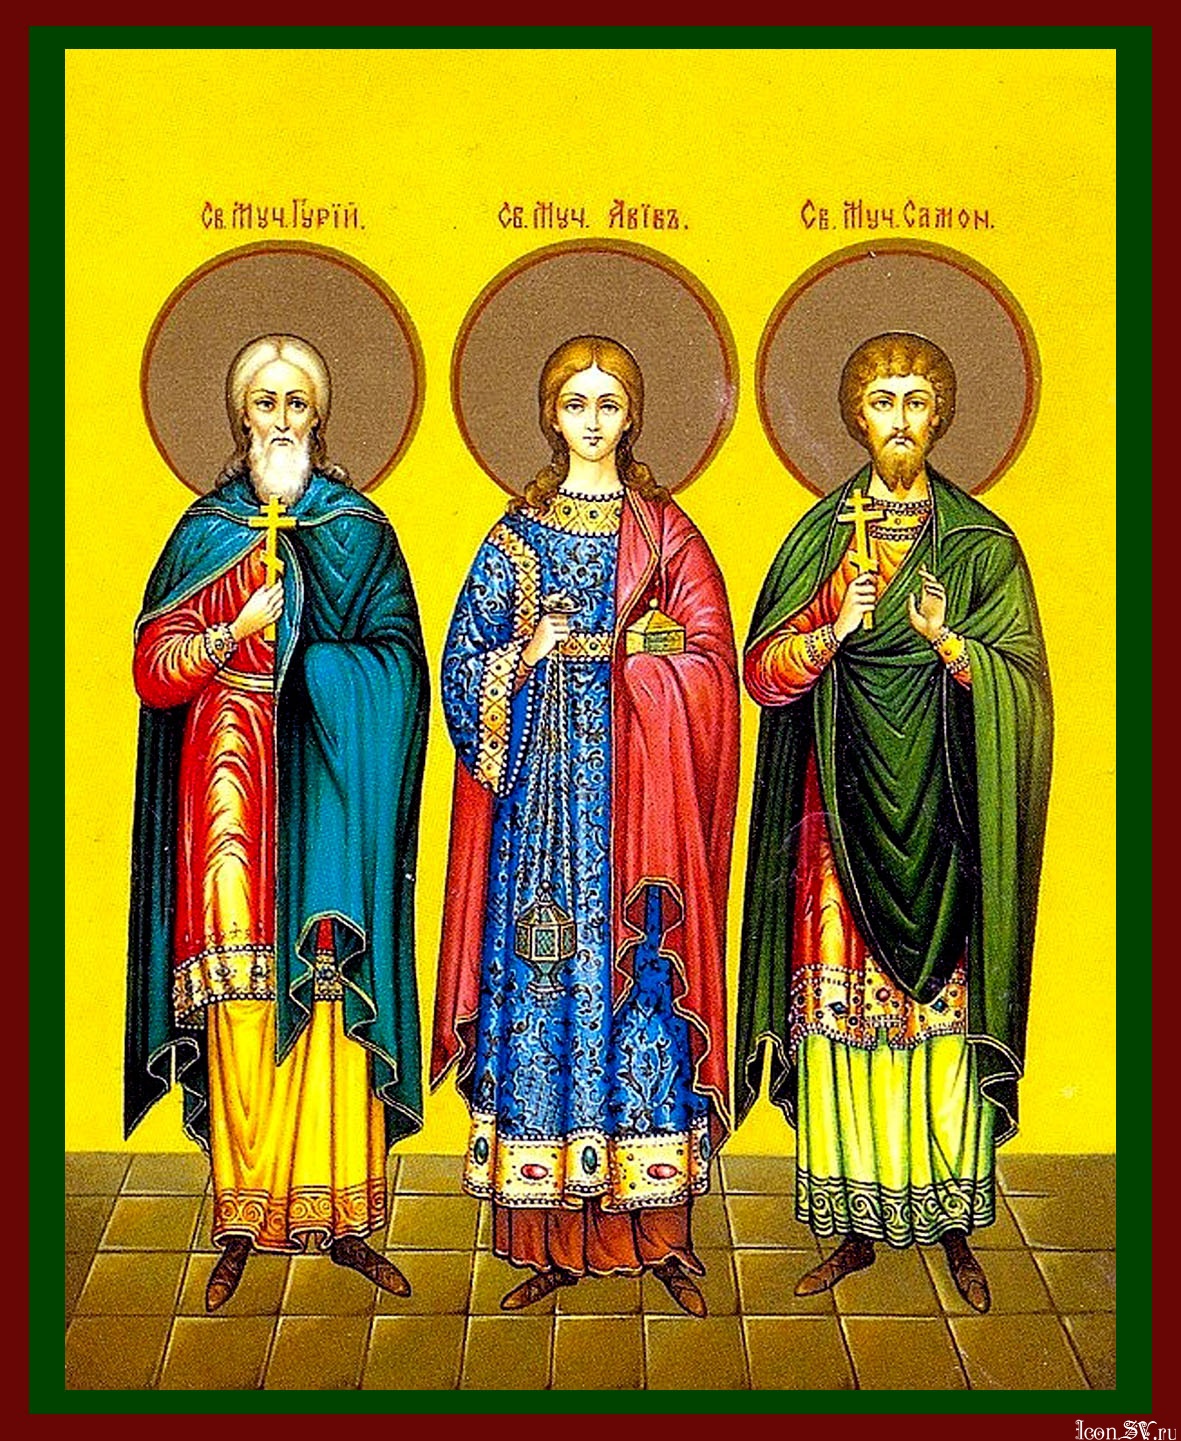 Семья святых покровителей тверской области. Икона святых Гурия Самона и Авива.